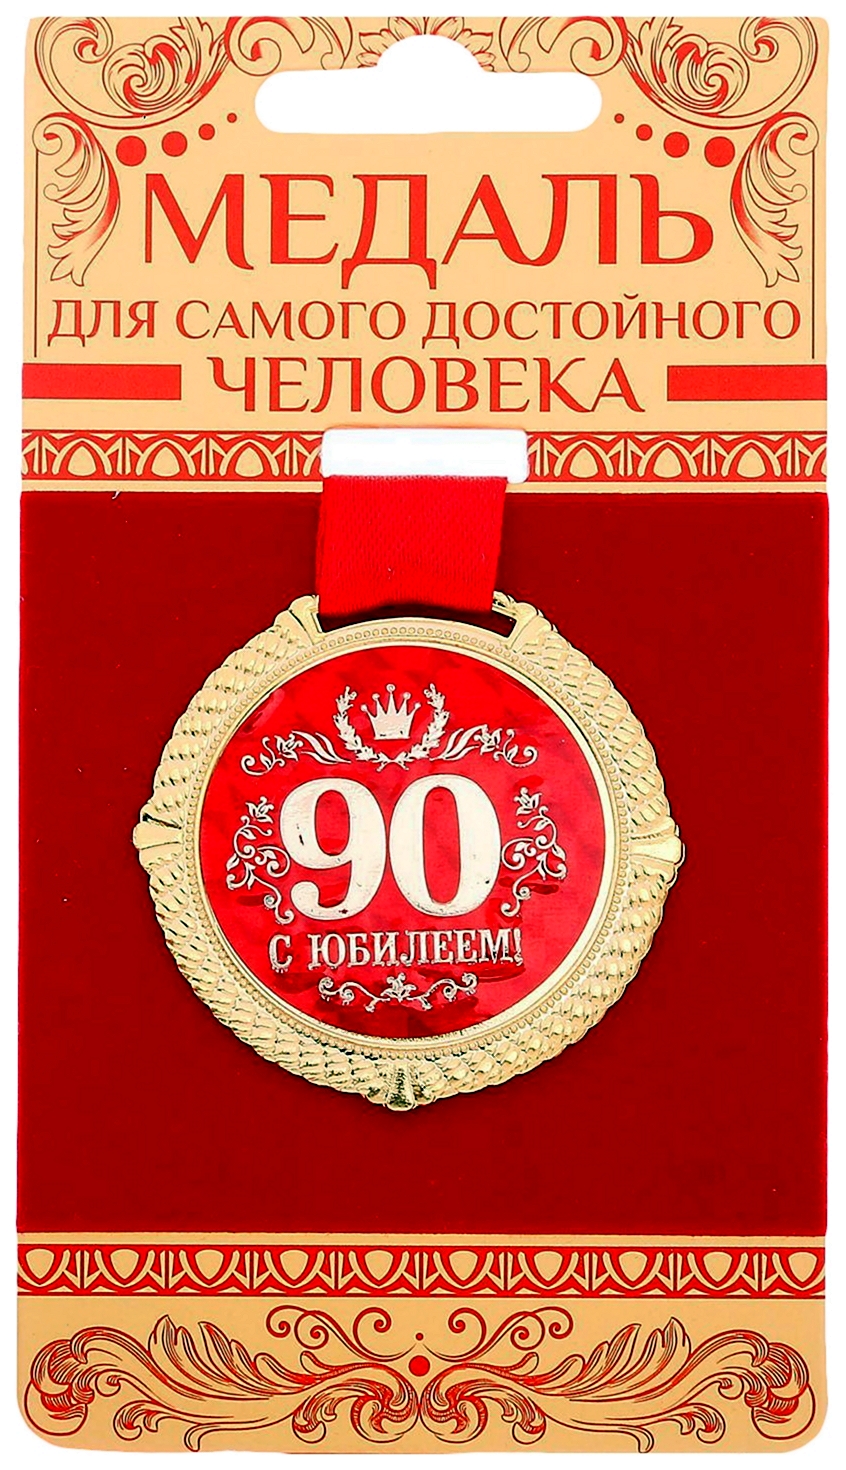 Медаль с юбилеем 80 лет